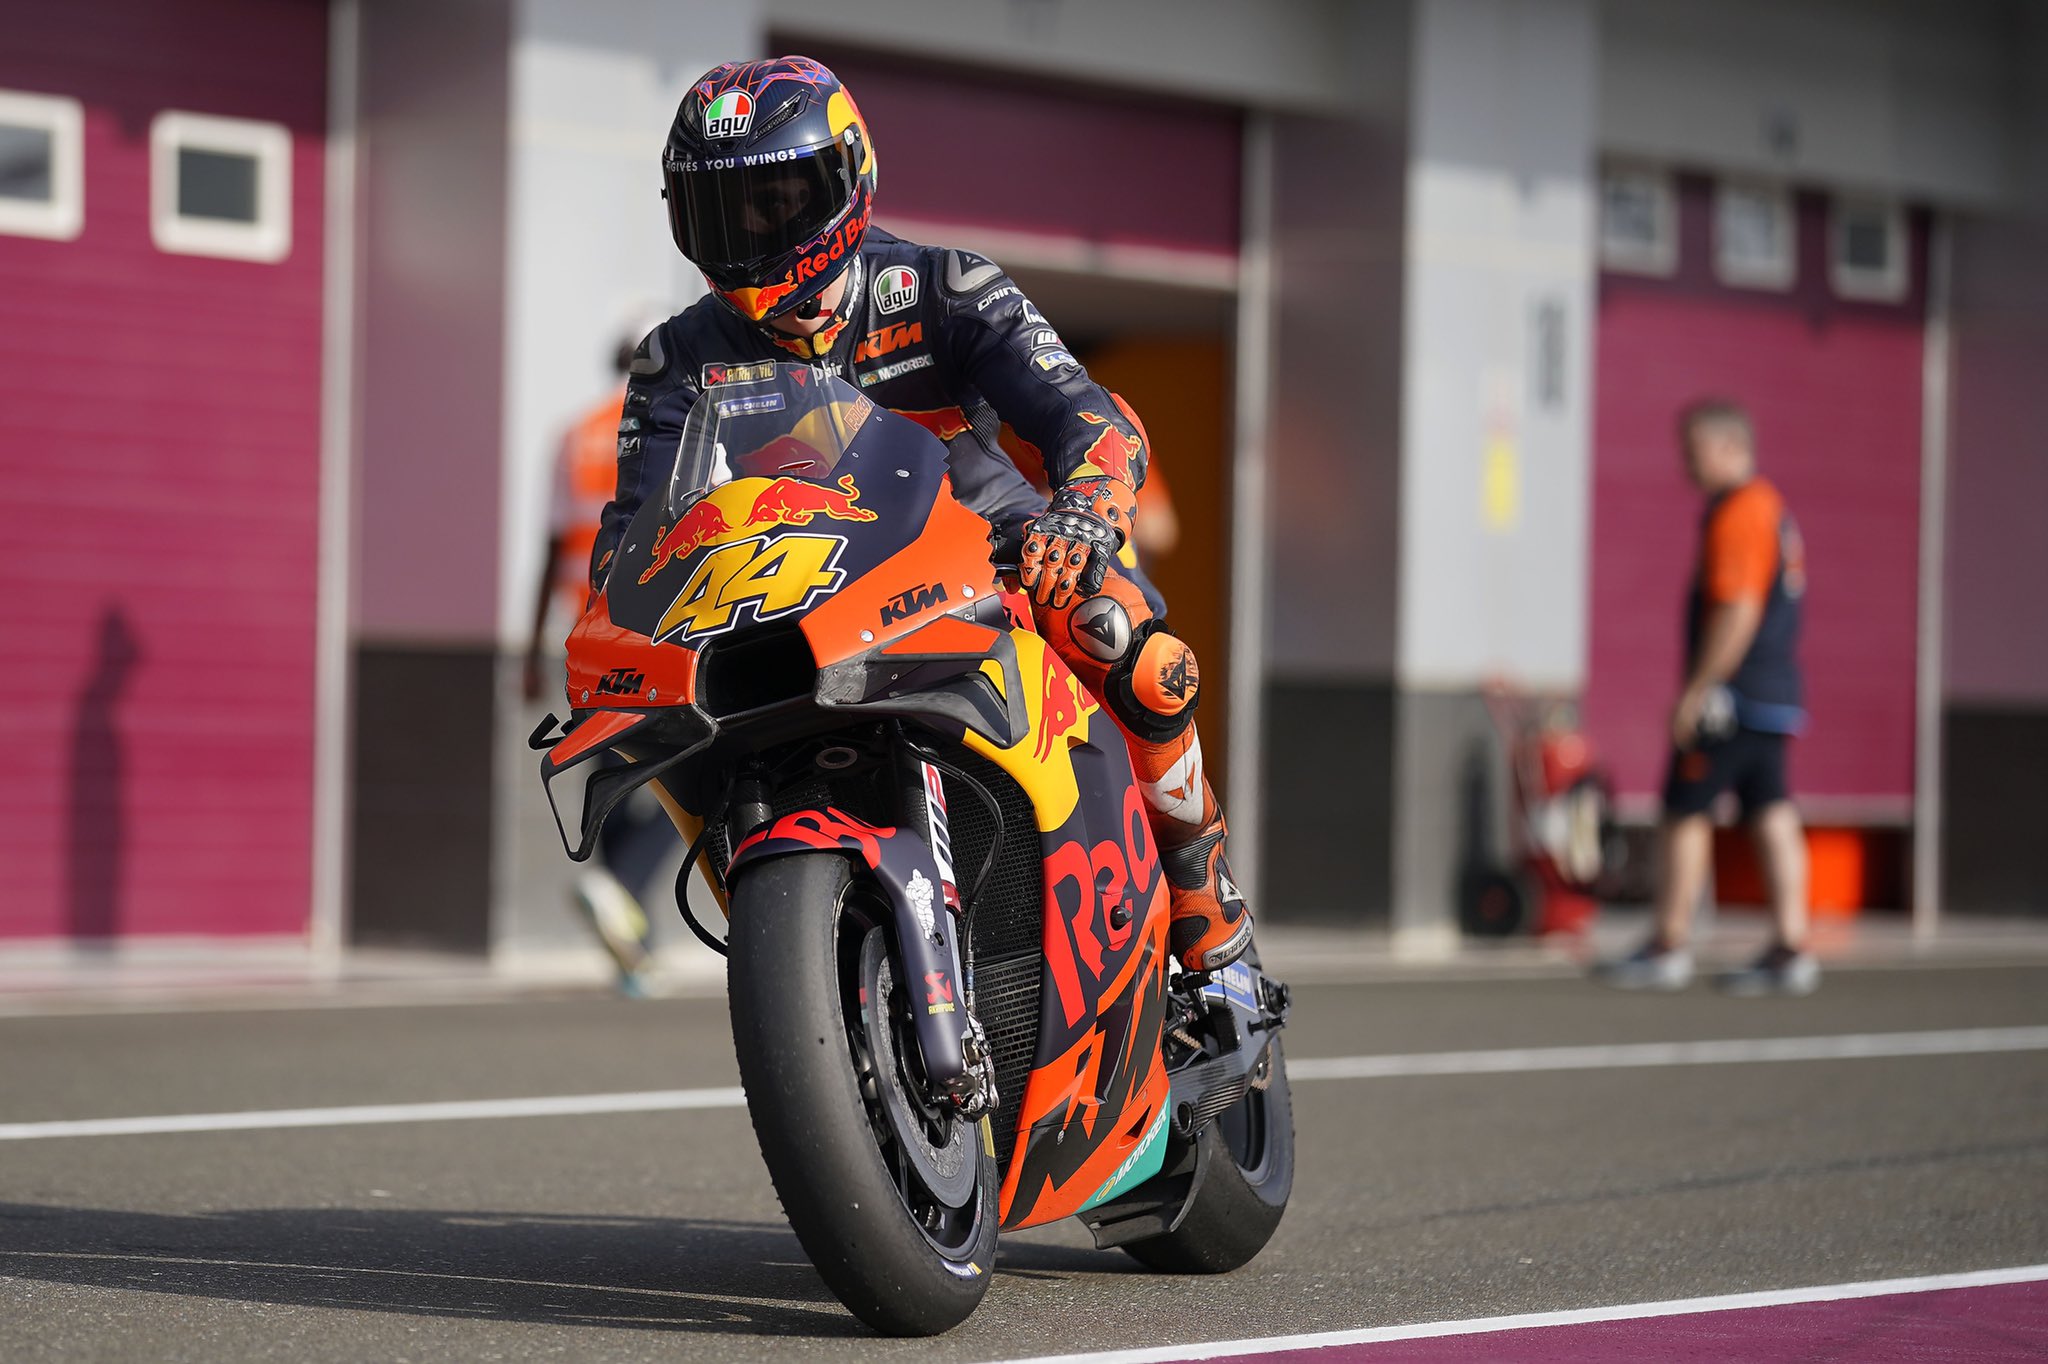 Pembalap KTM yang akan gabung Repsol Honda di musim 2021, Pol Espargaro. (Foto: Twitter/@polespargaro)